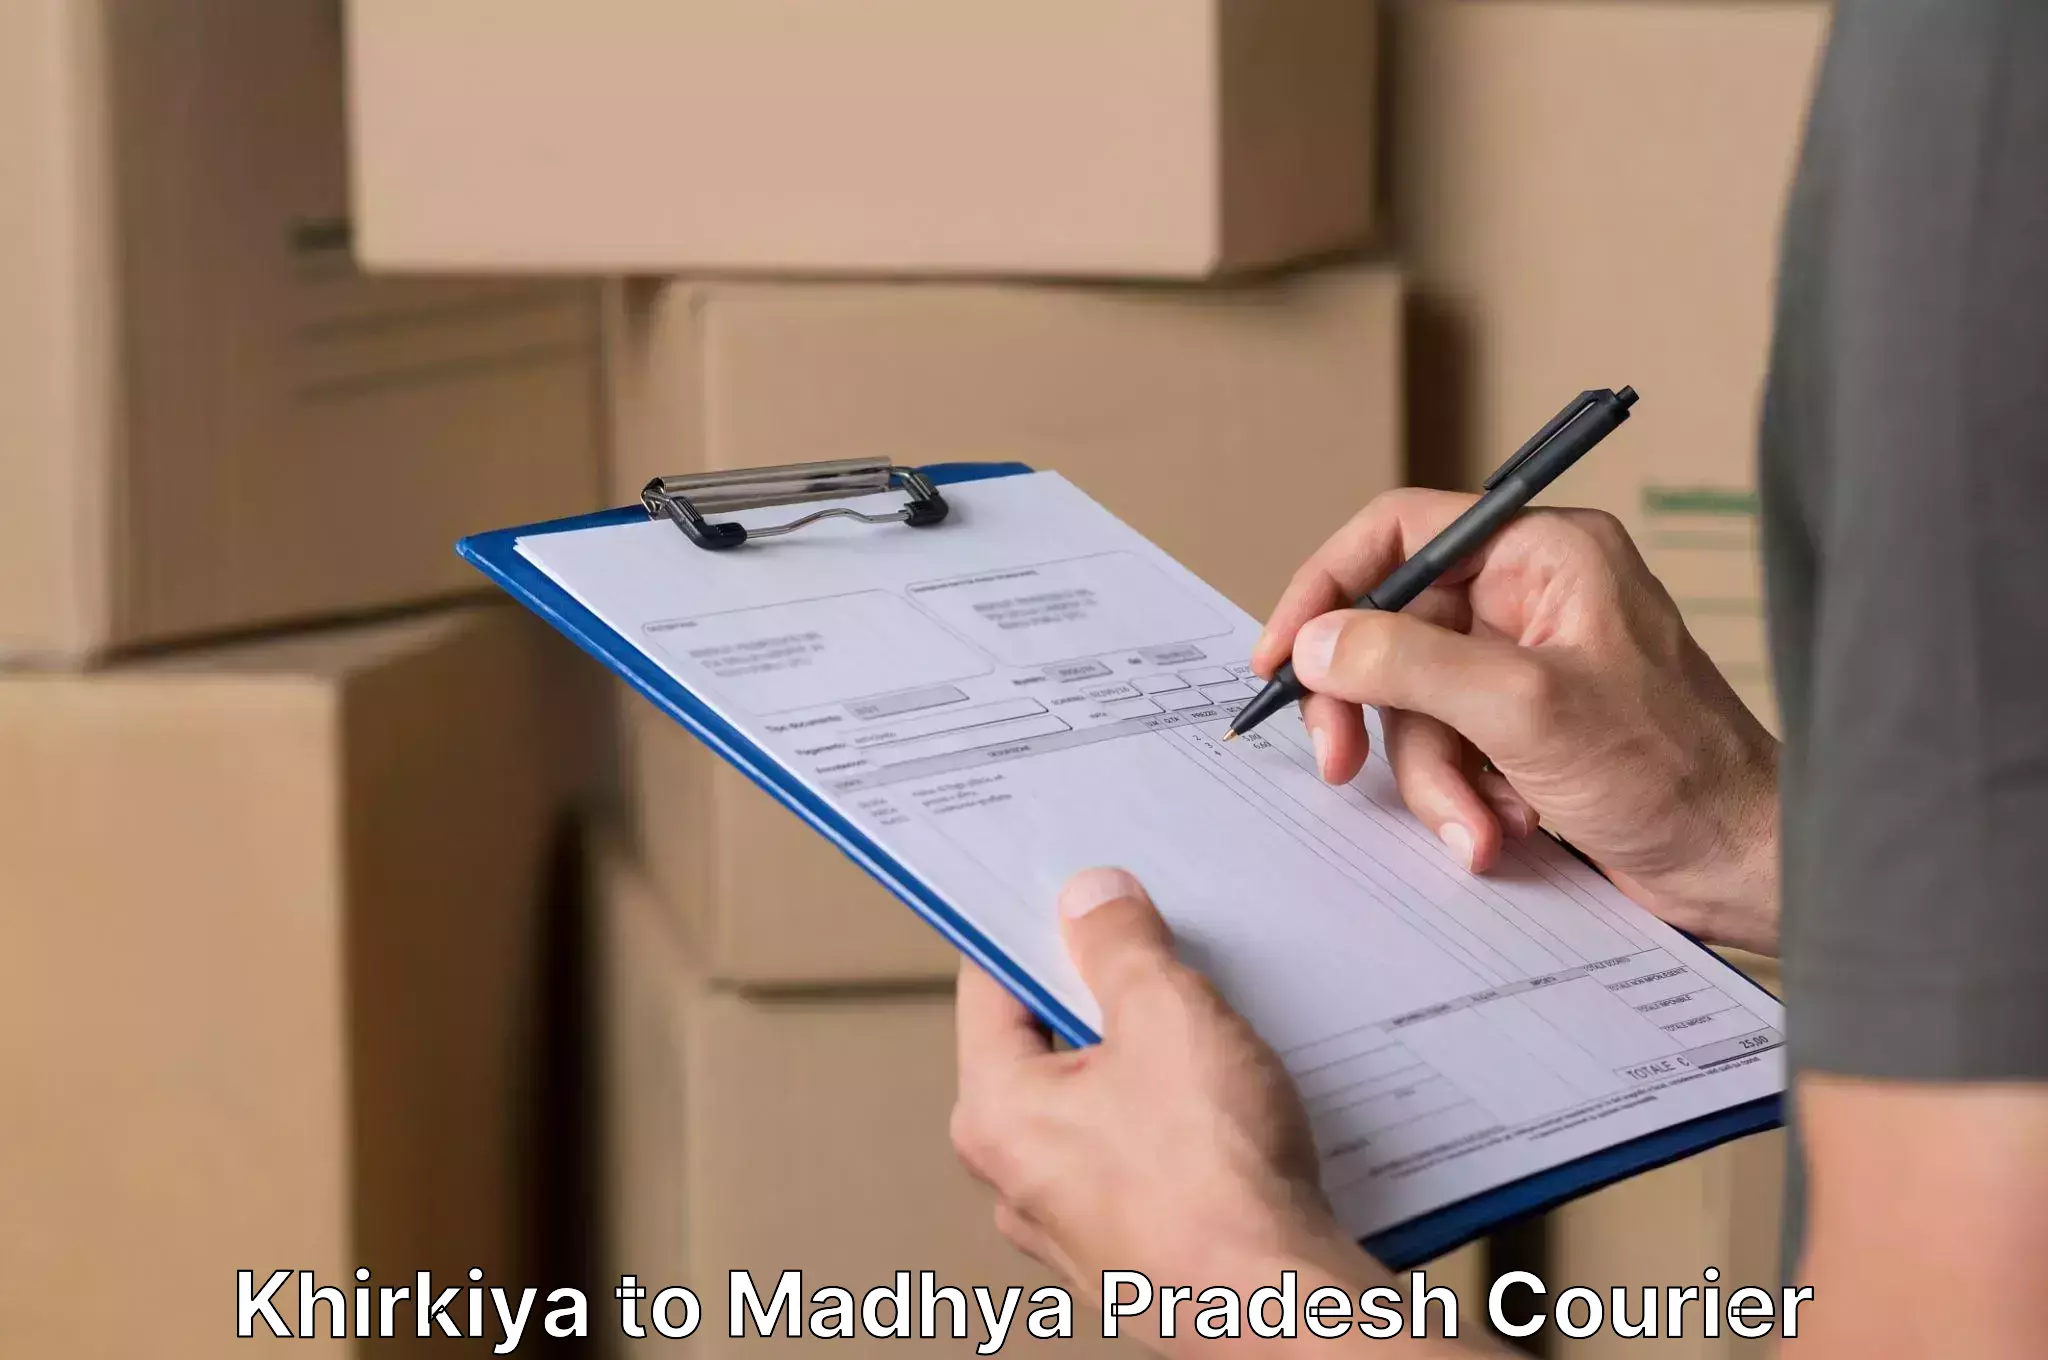 Professional moving assistance Khirkiya to Madhya Pradesh